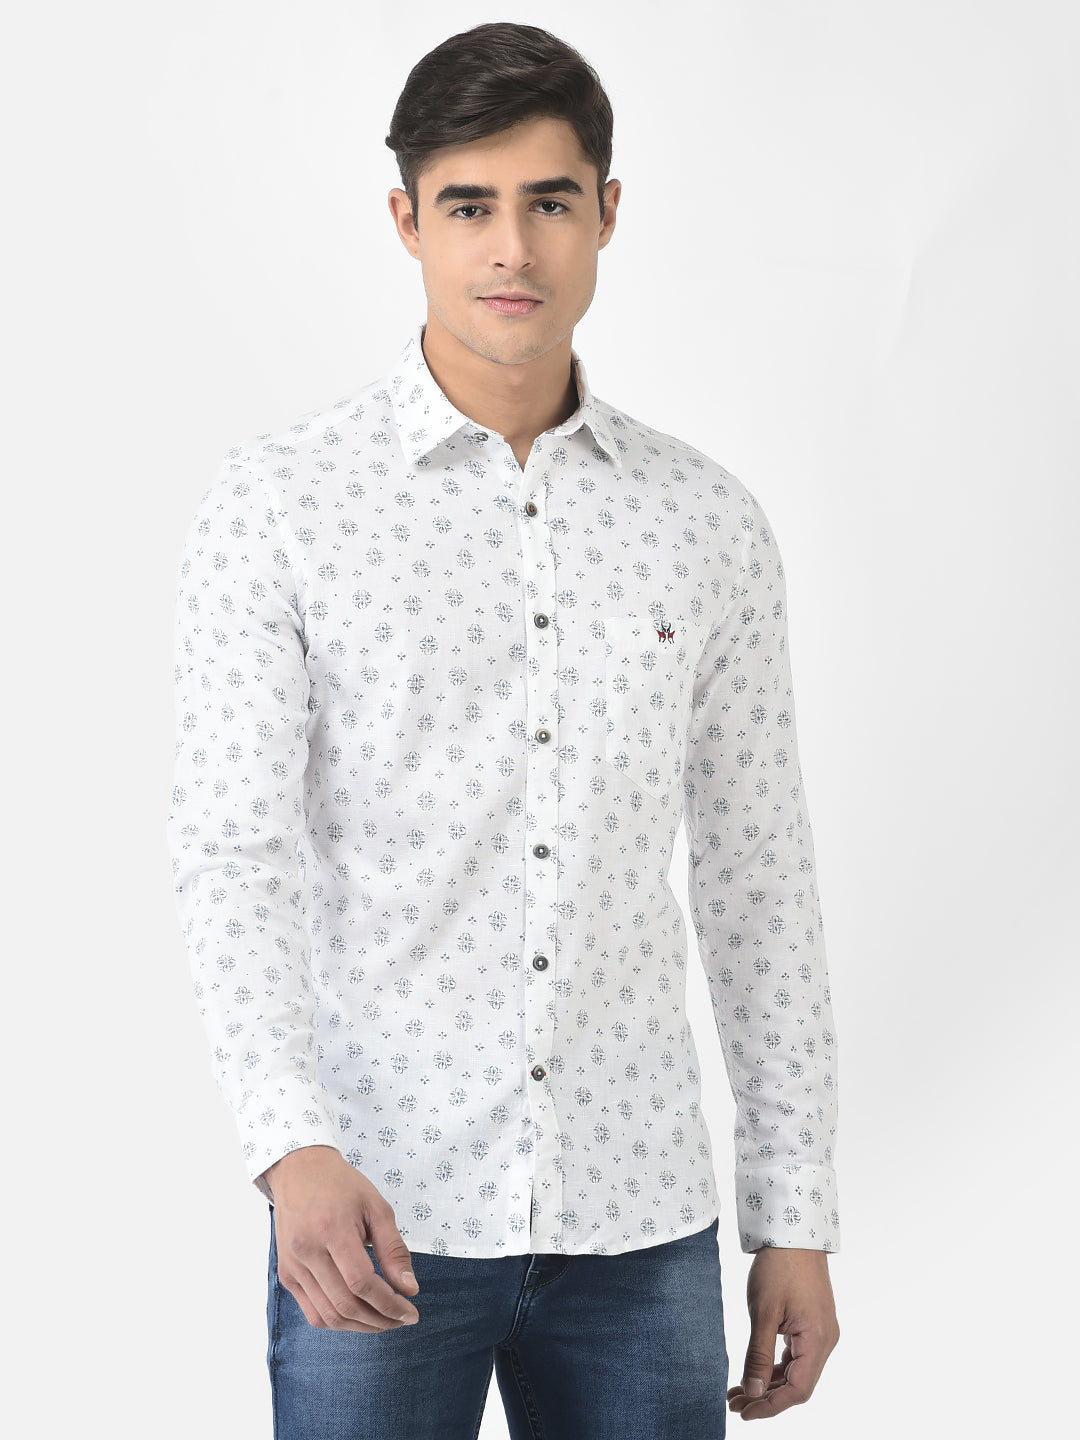  White Shirt in Motif Print